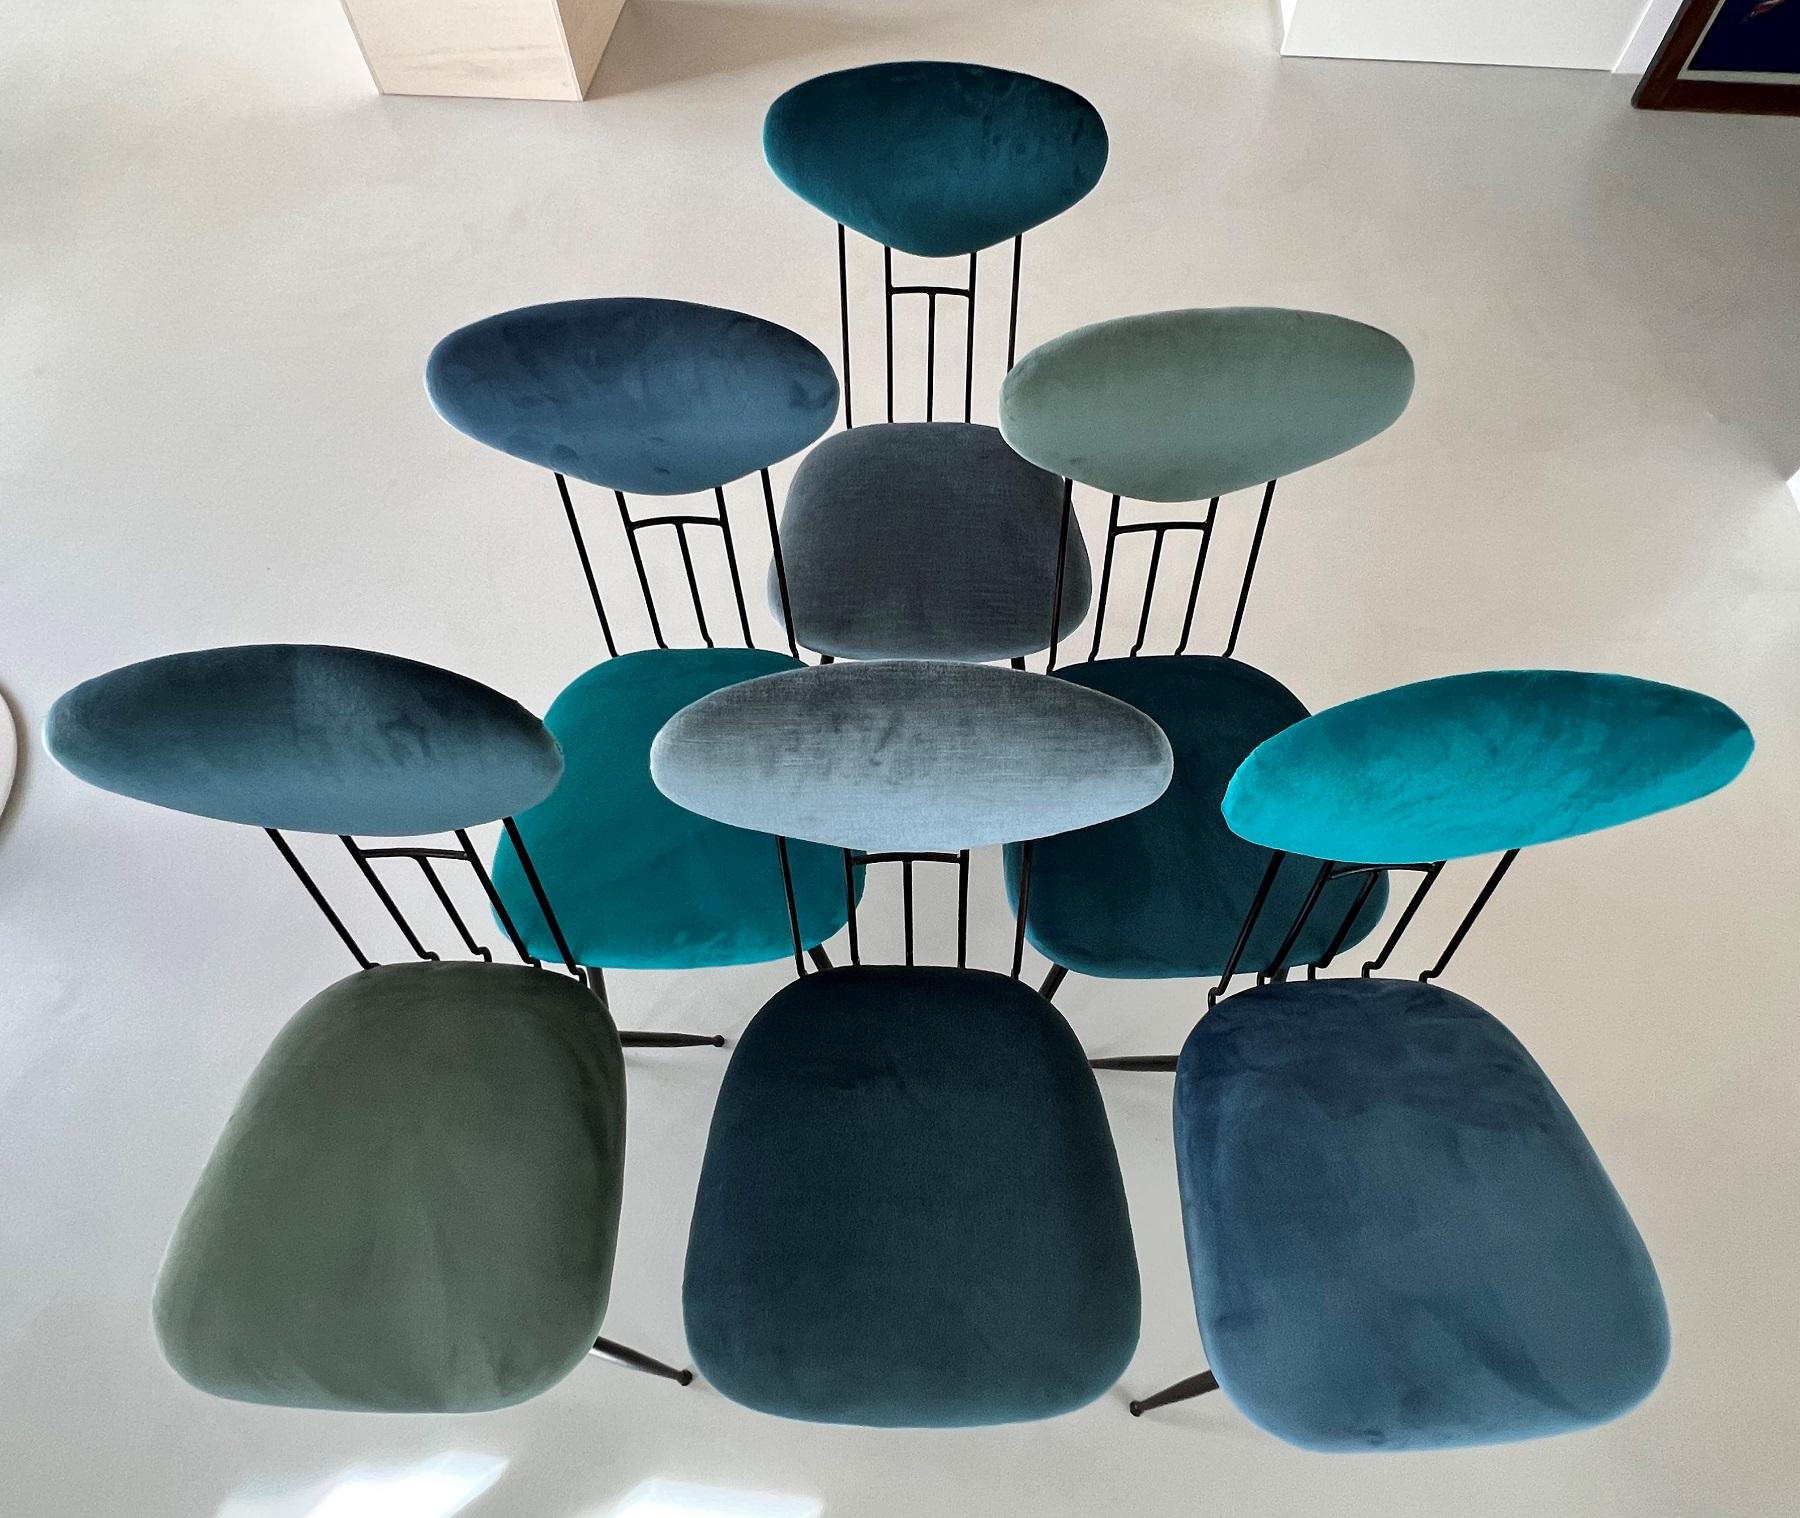 Italian Midcentury Dining Room Chairs Re-Upholstered in Velvet, 1960s For Sale 2